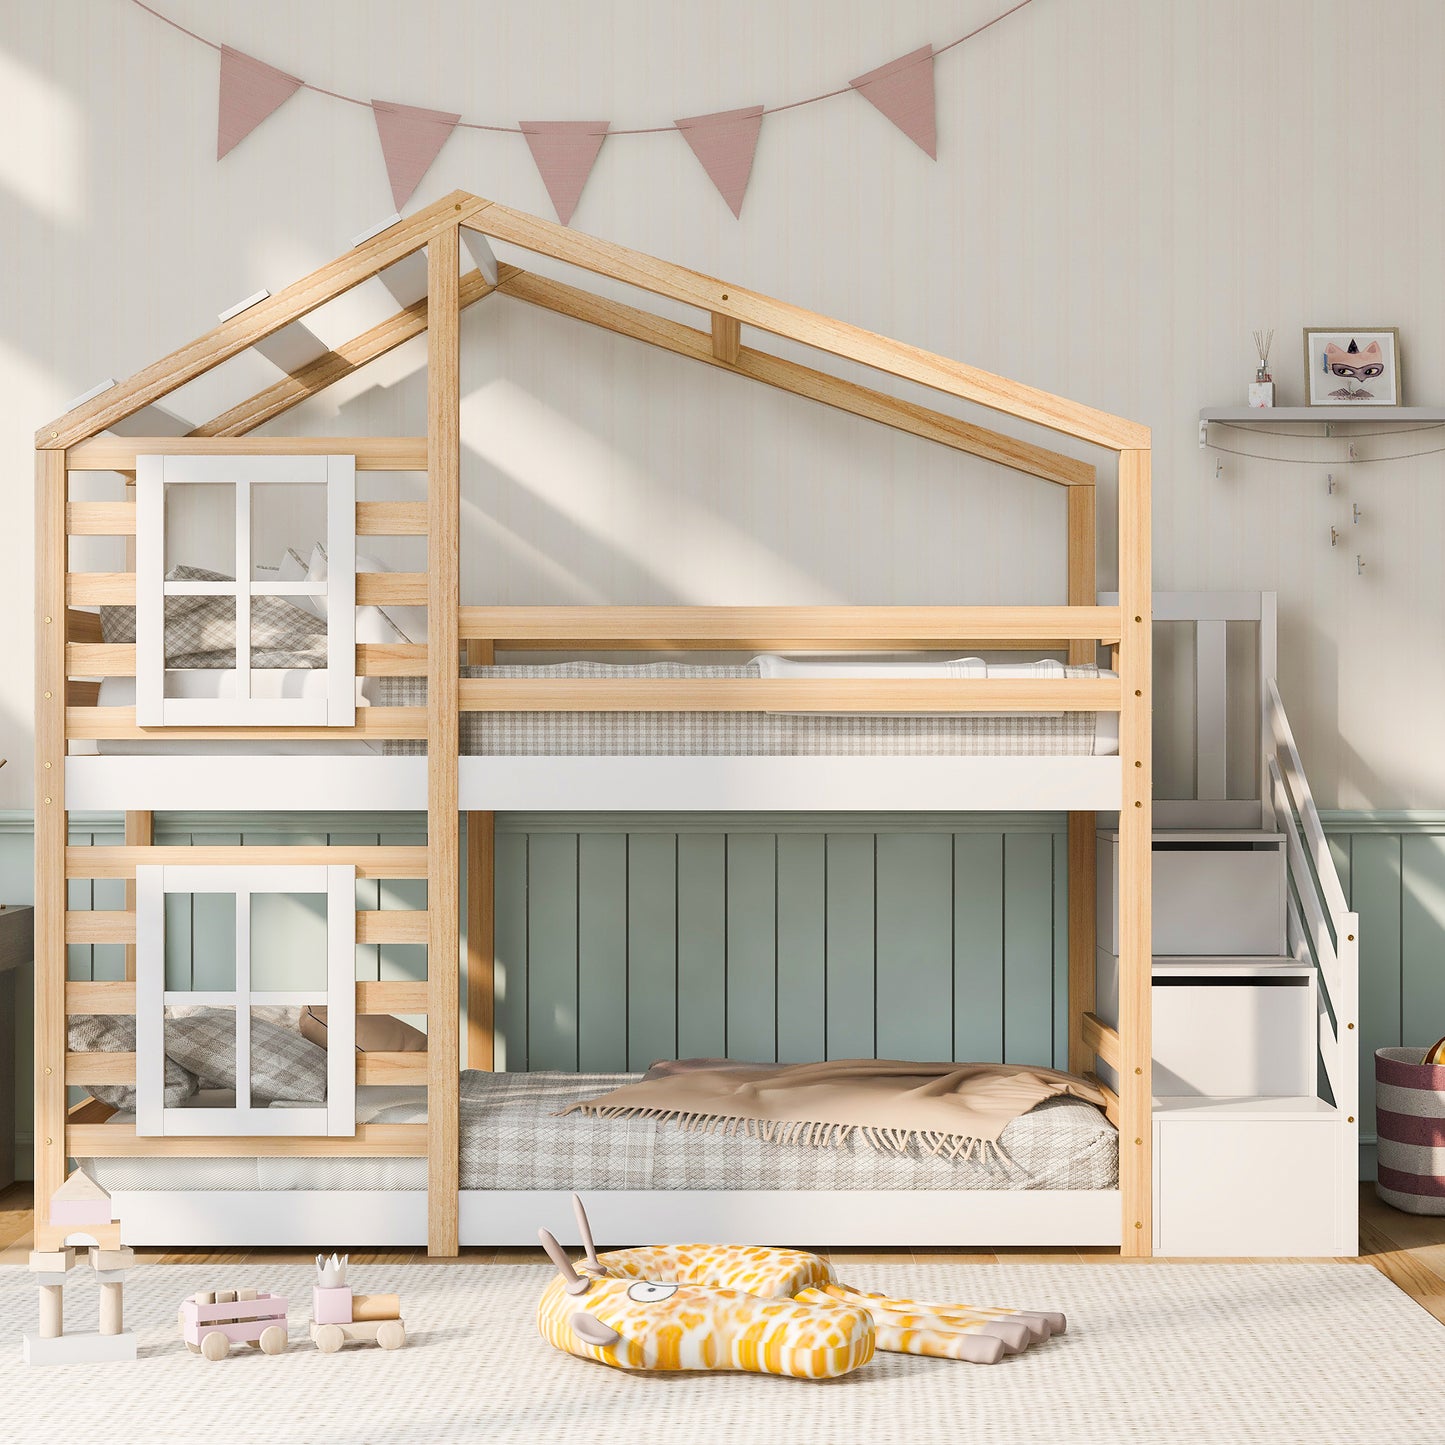 Barnsäng,Säng90 x 200 cm, loft säng för barn- 2x lamellat ram- natur & vit